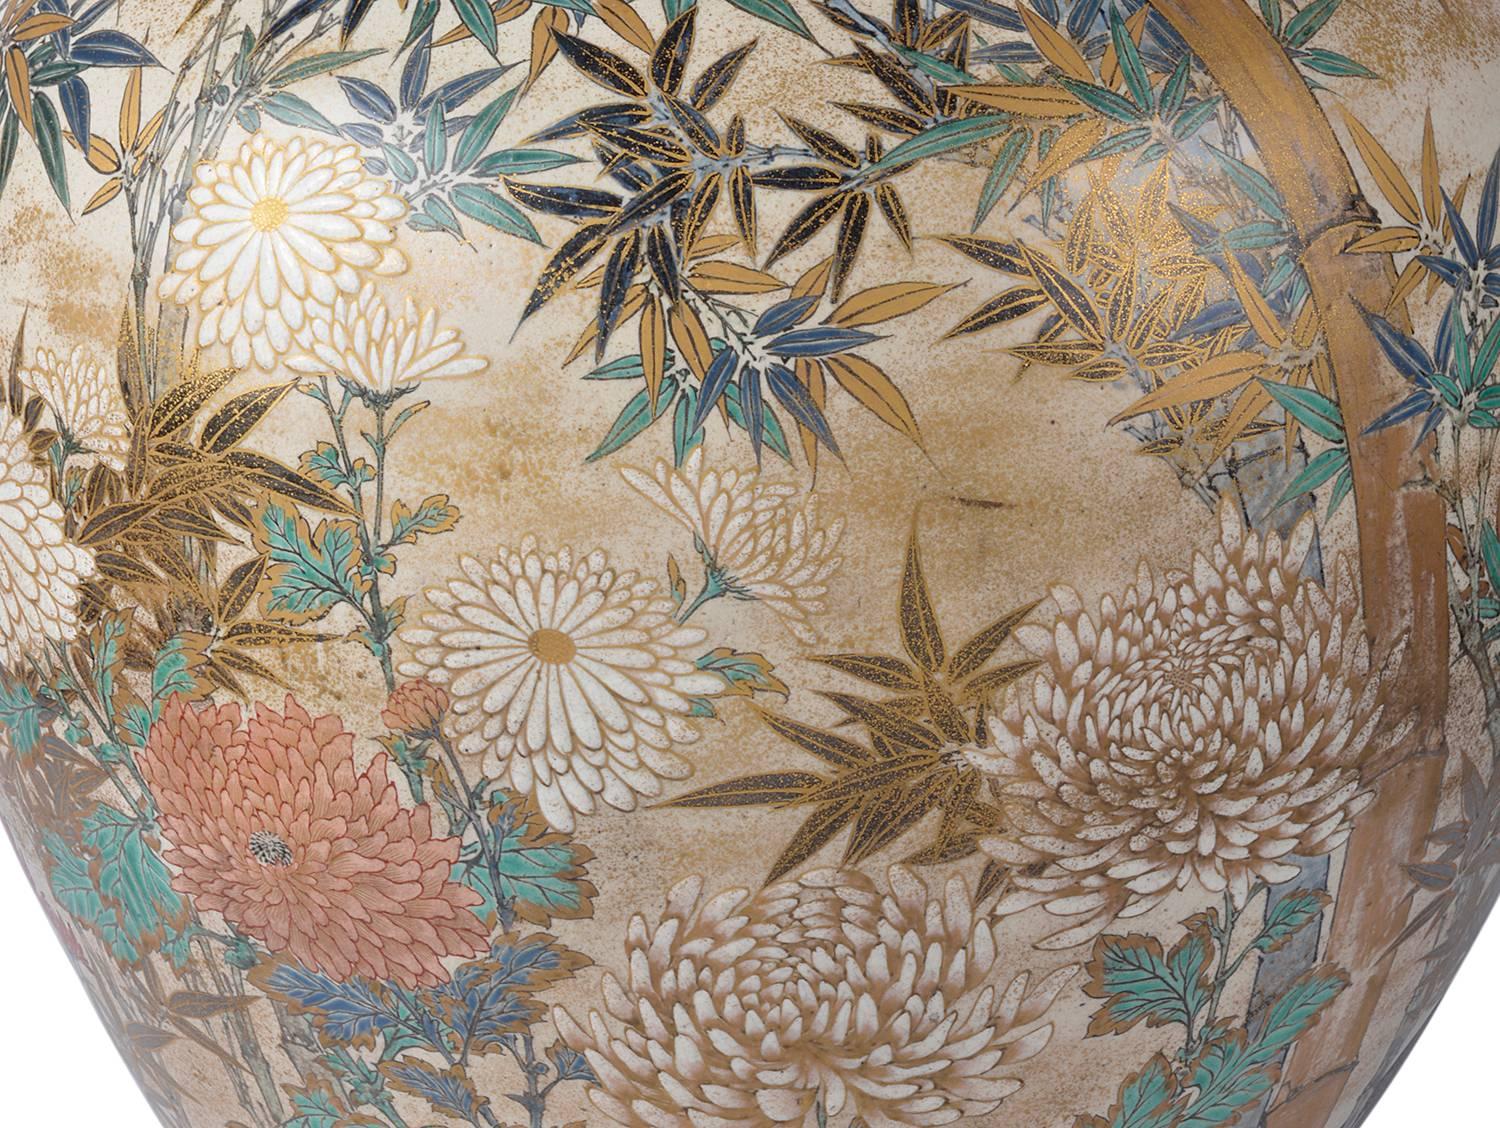 Hand-Painted Large and Impressive Japanese Satsuma Vase